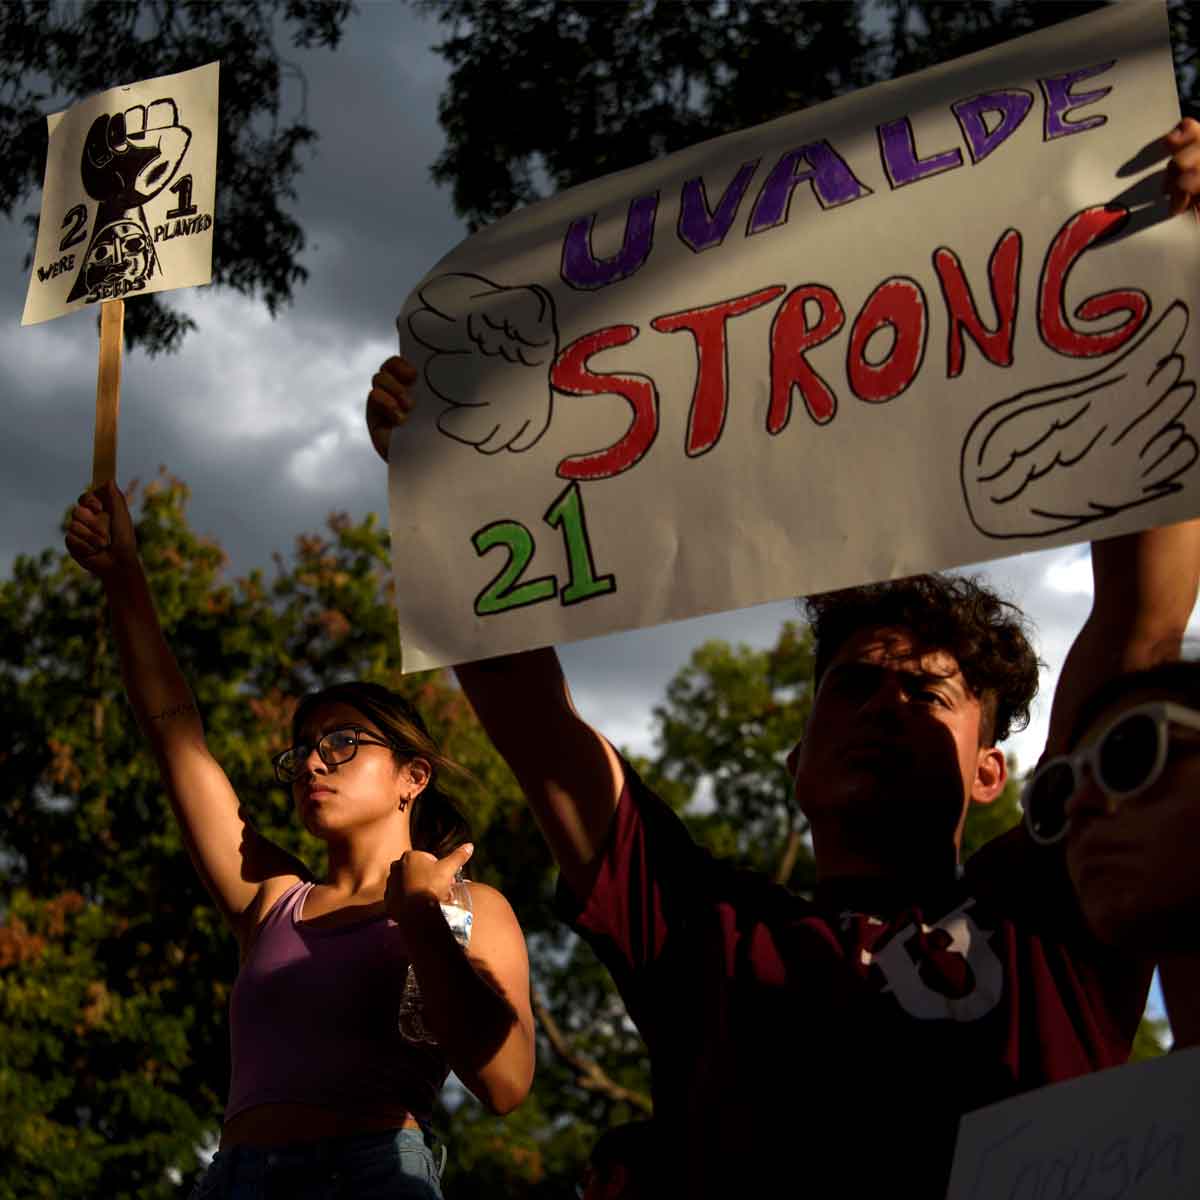 Familiares de las víctimas del tiroteo en Uvalde, Texas, exigen justicia. / Foto: Callaghan O'Hare/The New York Times